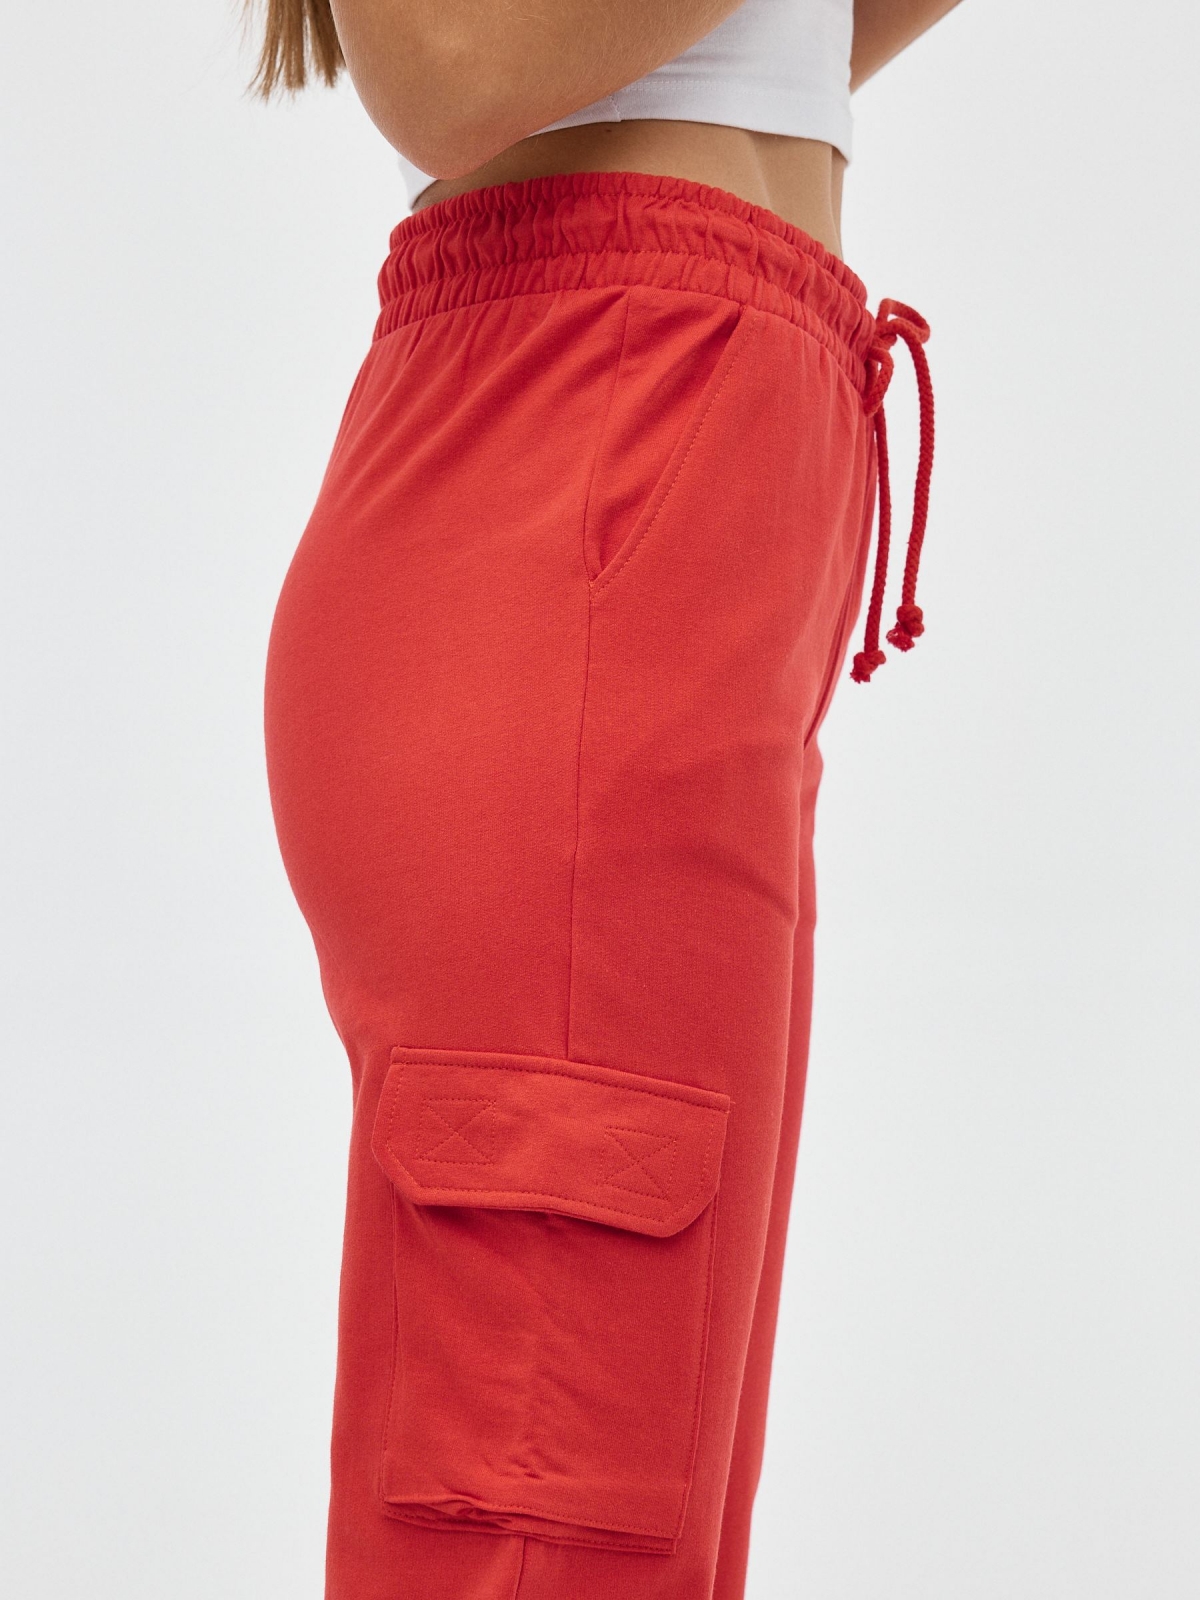 Plush jogger pants orange detail view